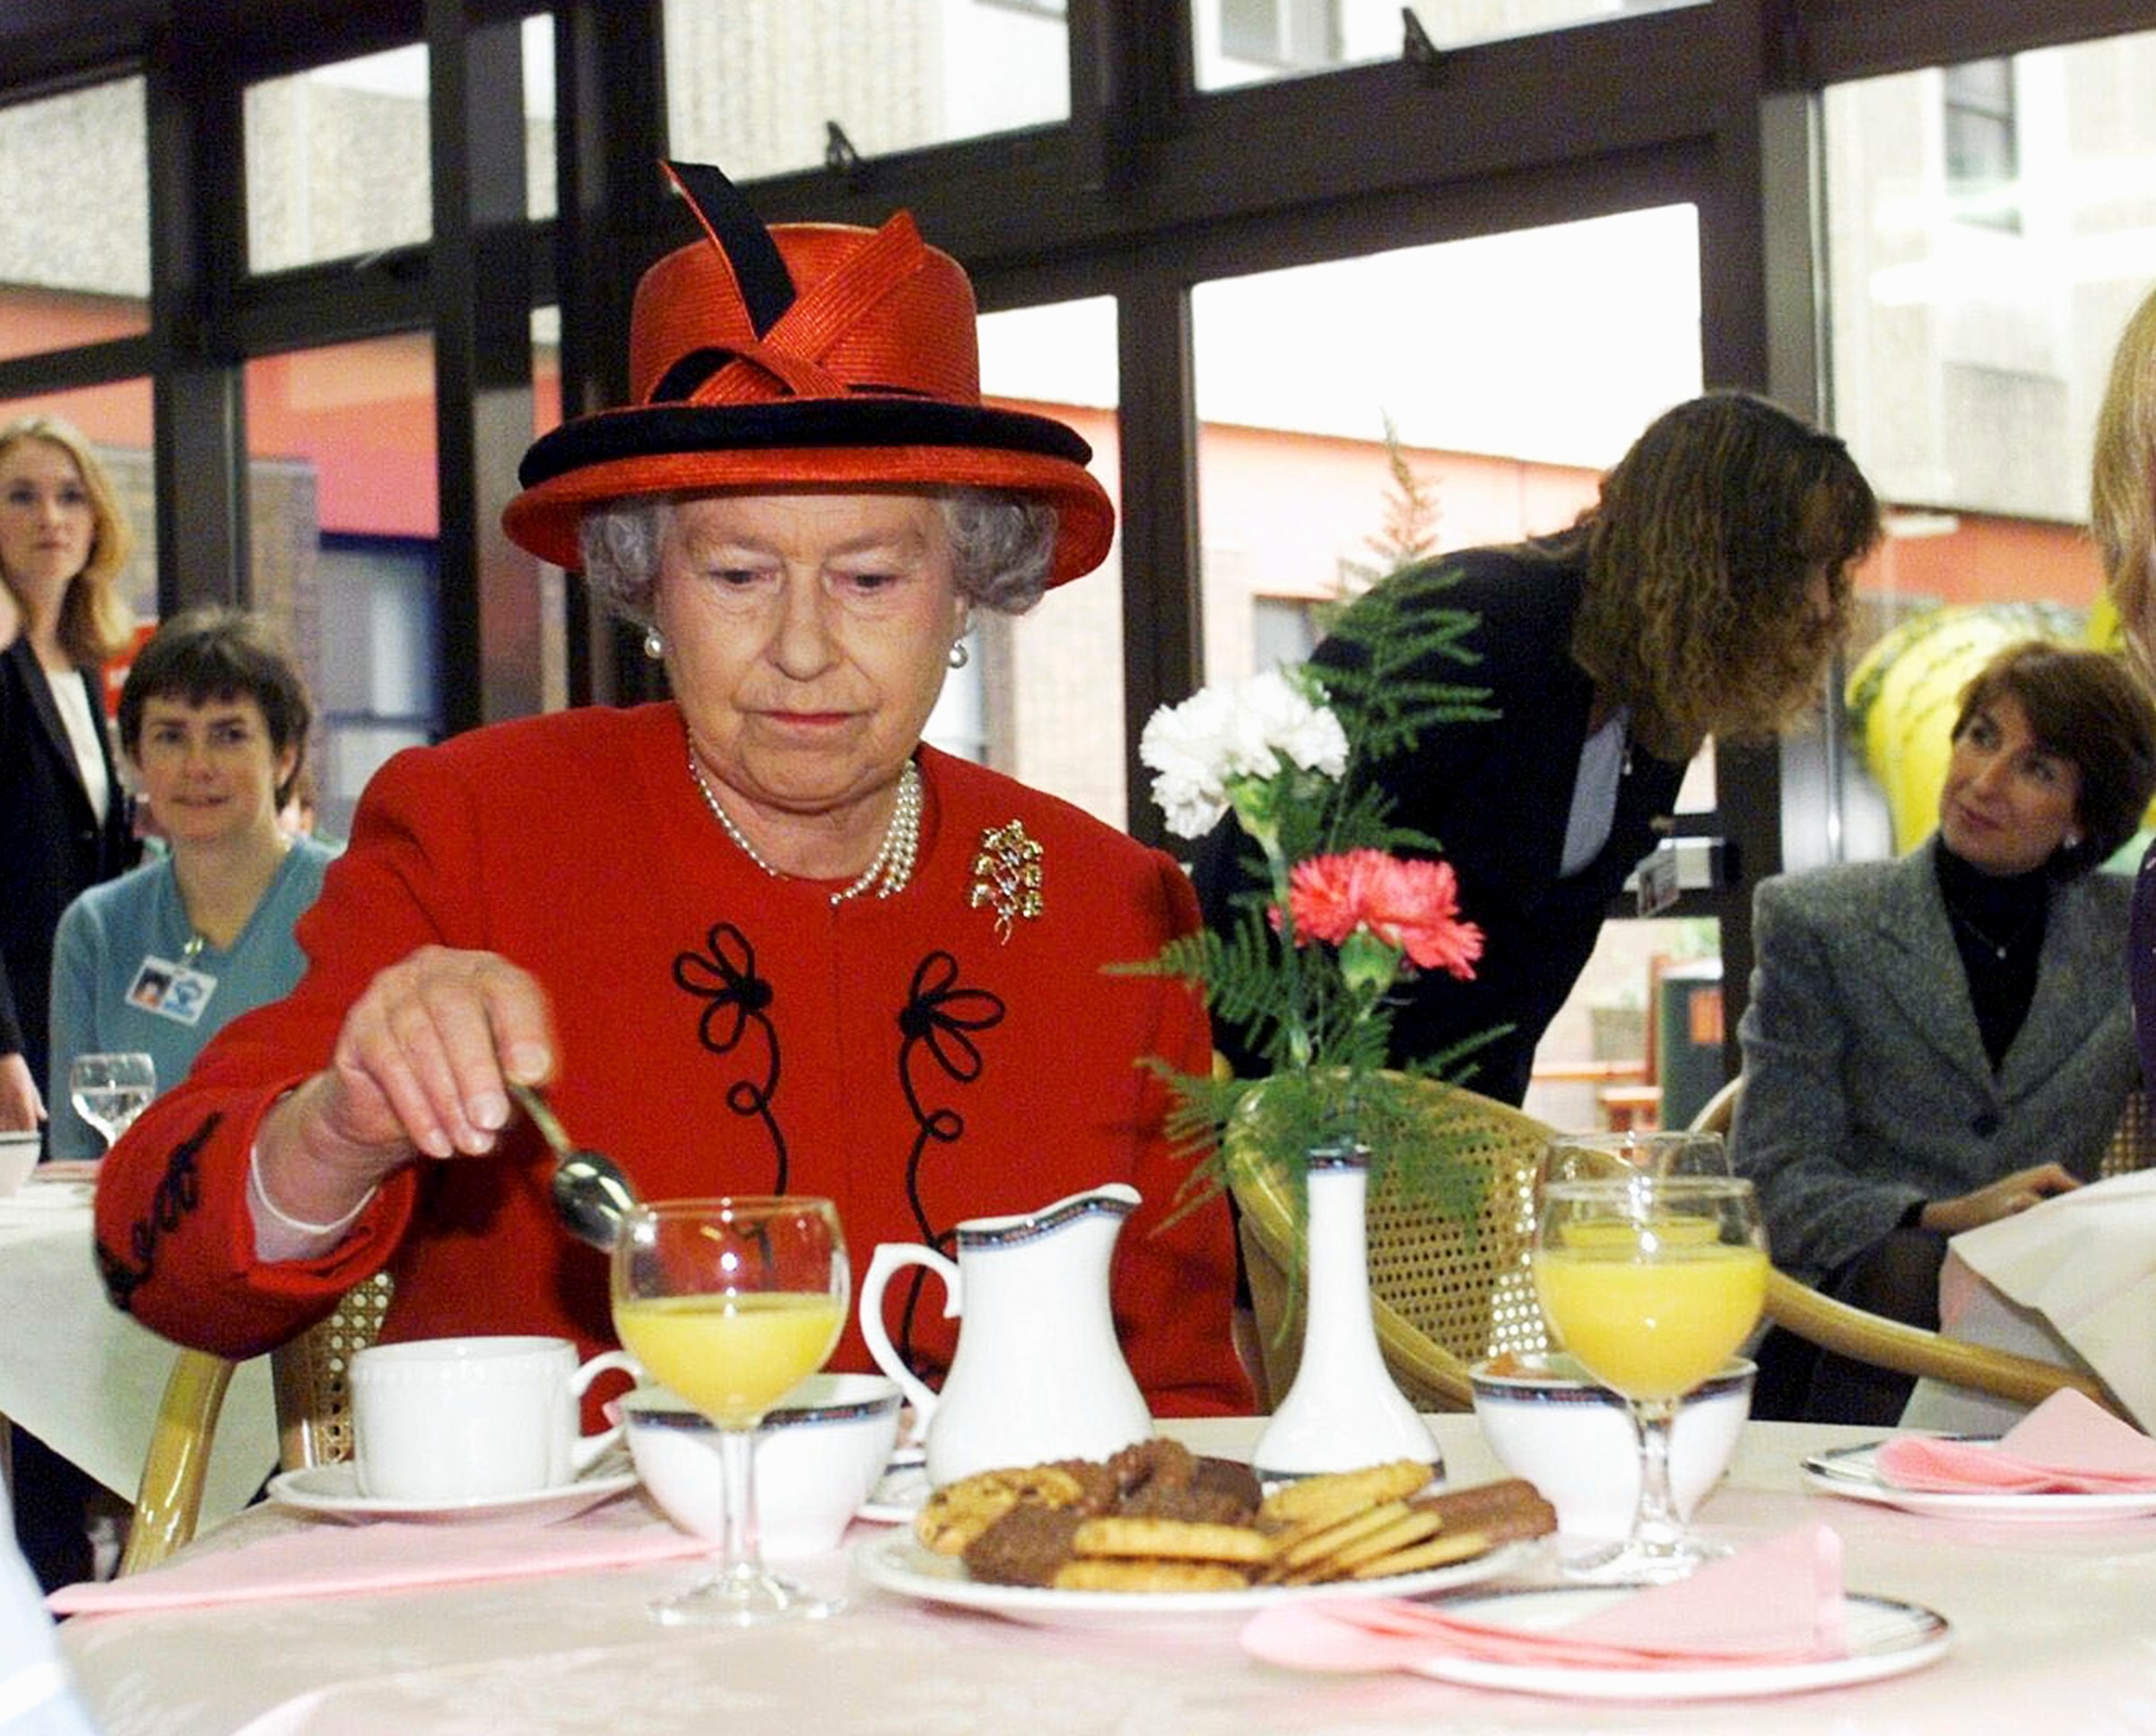 طاهي الملكة اليزابيث يكشف الطبق المشهور التي لم تكن تتناوله 